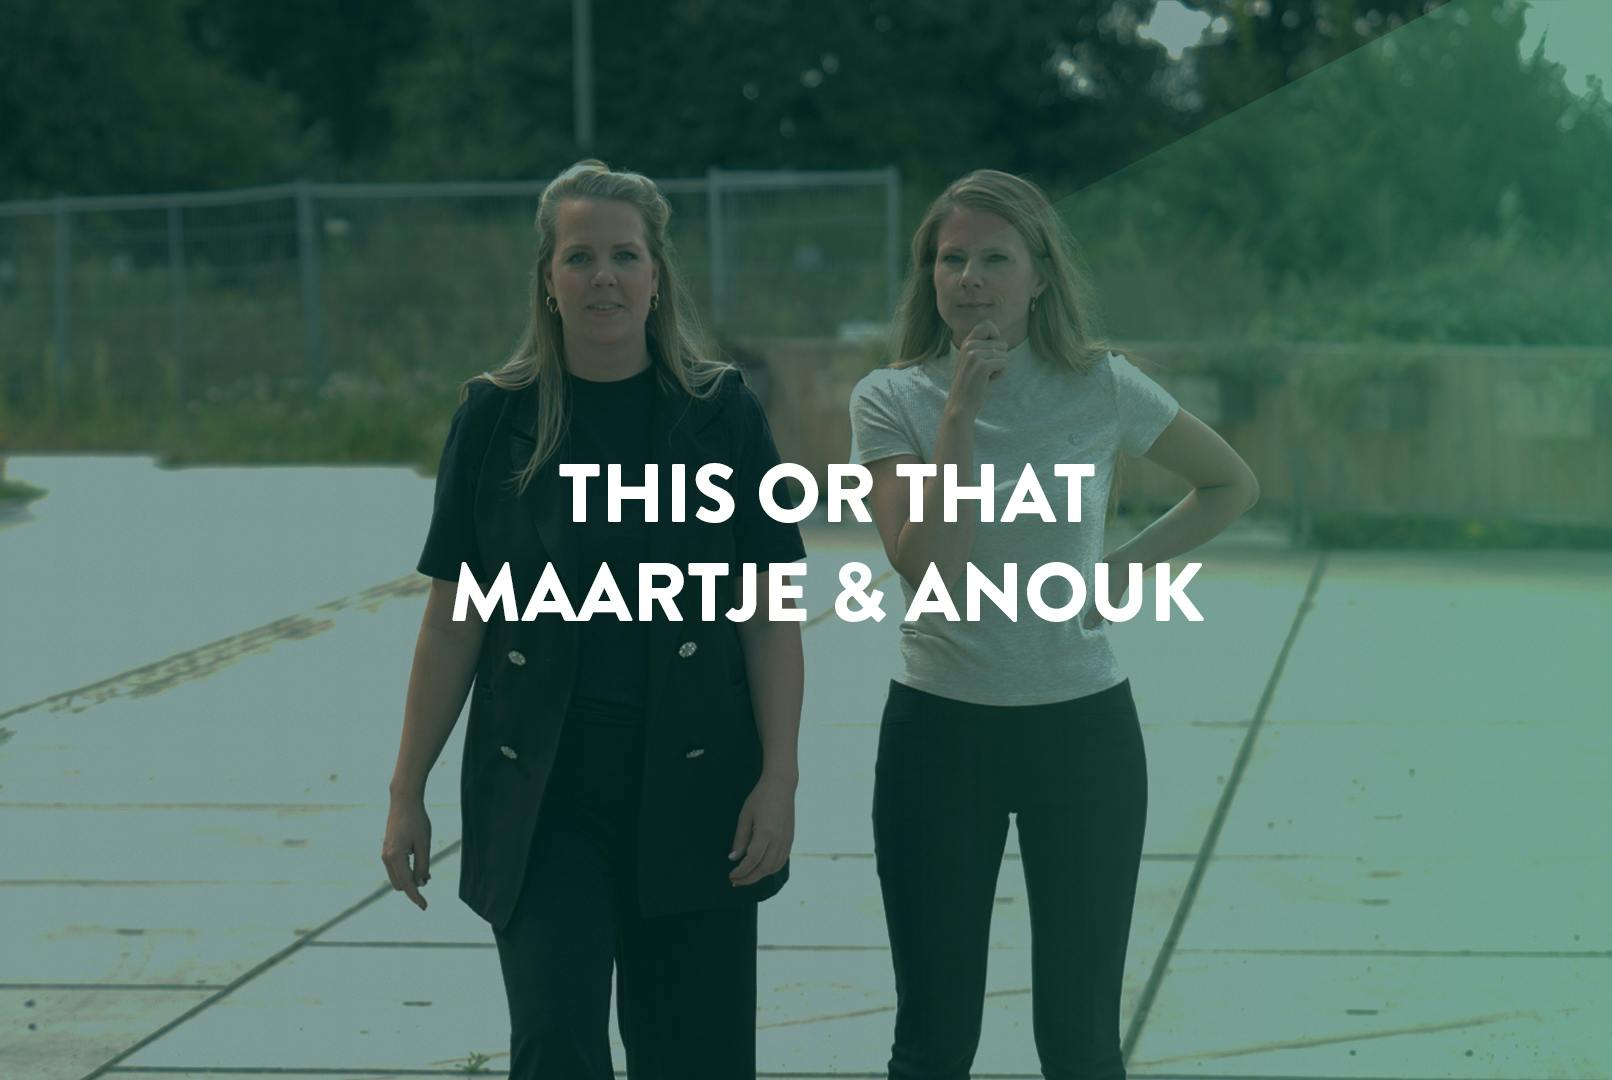 Maartje en Anouk die staan op de straat met de tekst 'this or that' daarvoor.